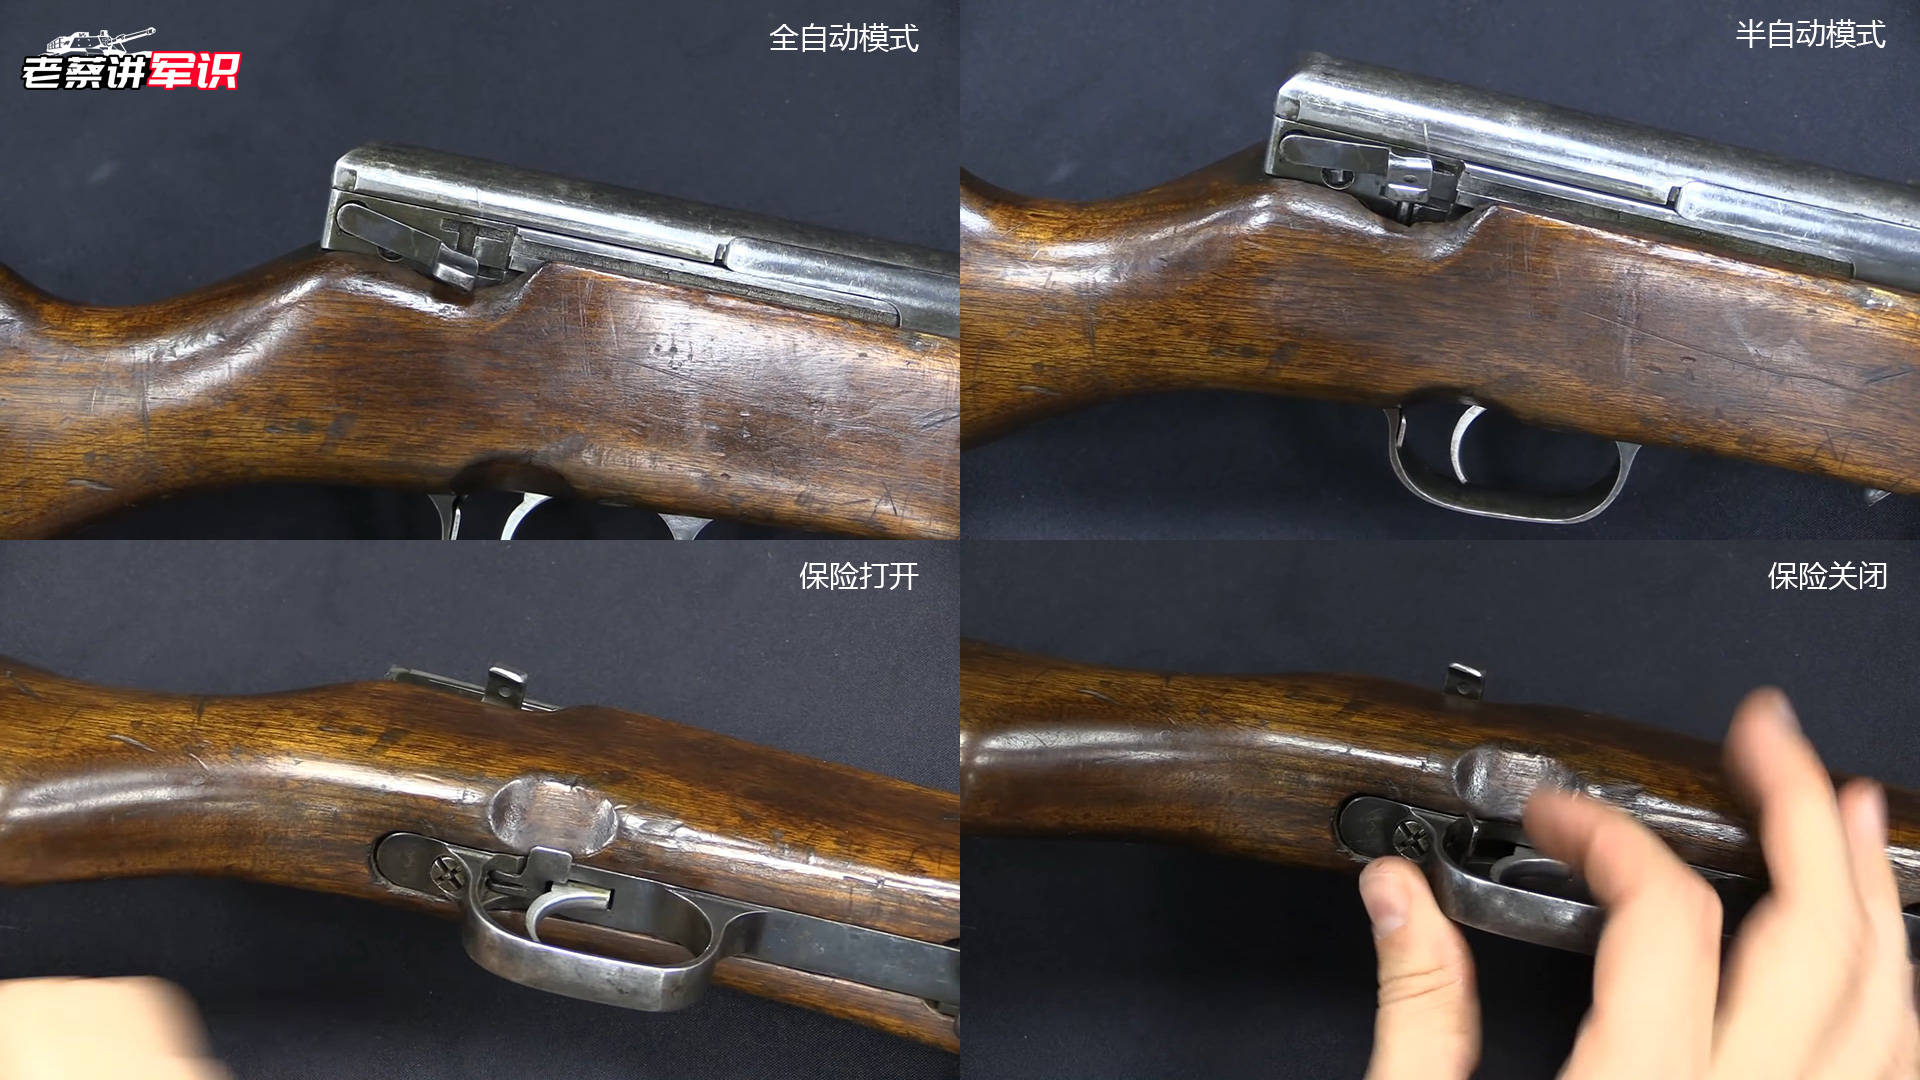 早于美国m1加兰德成为制式半自动步枪的苏联avs36步枪